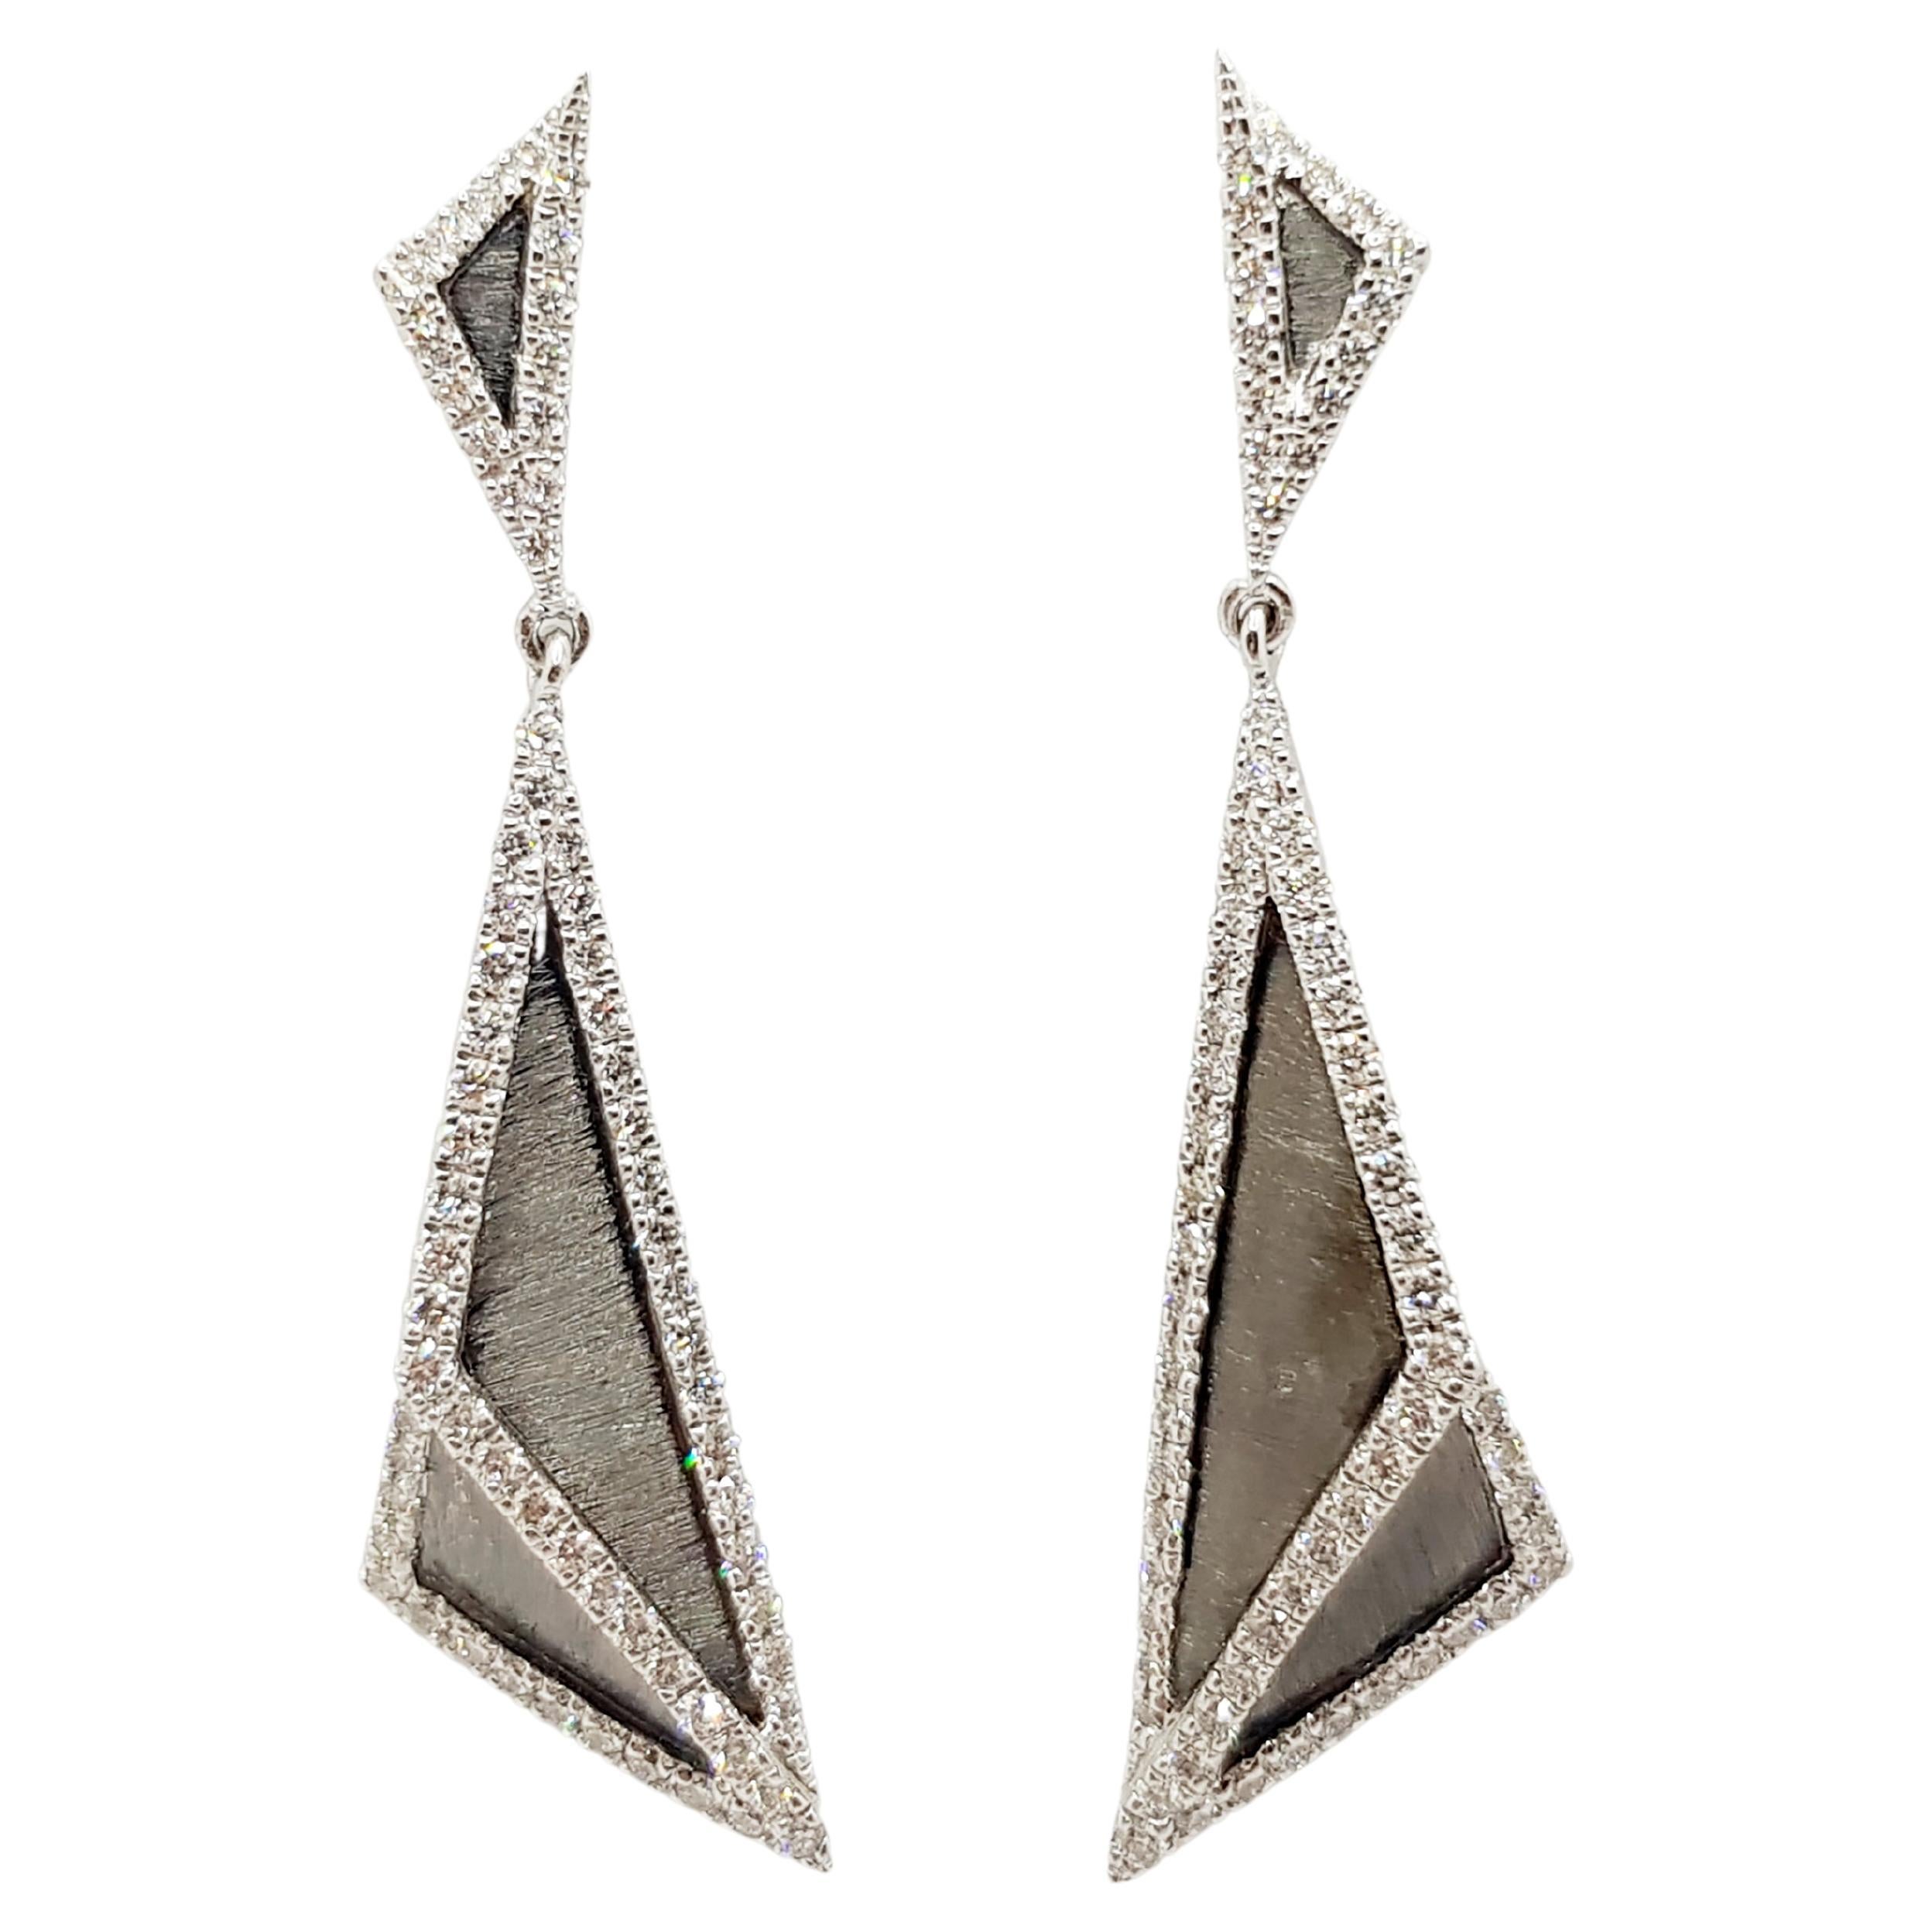 Diamond Earrings Set in 18 Karat White Gold Settings by Kavant & Sharart